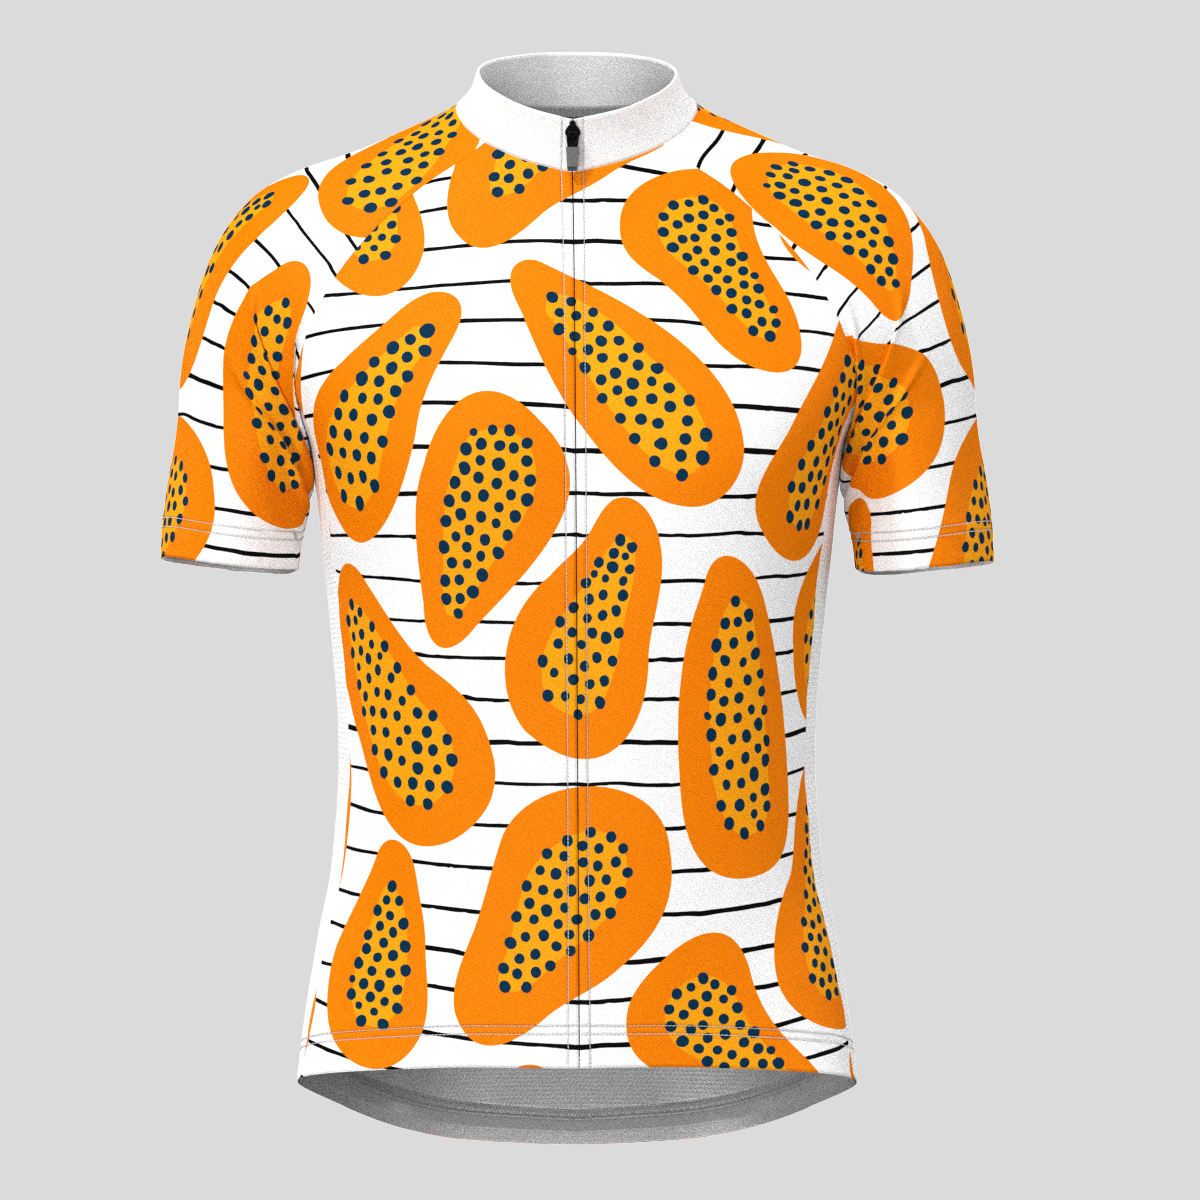 Papaya Stripes Print Men's Cycling Jersey